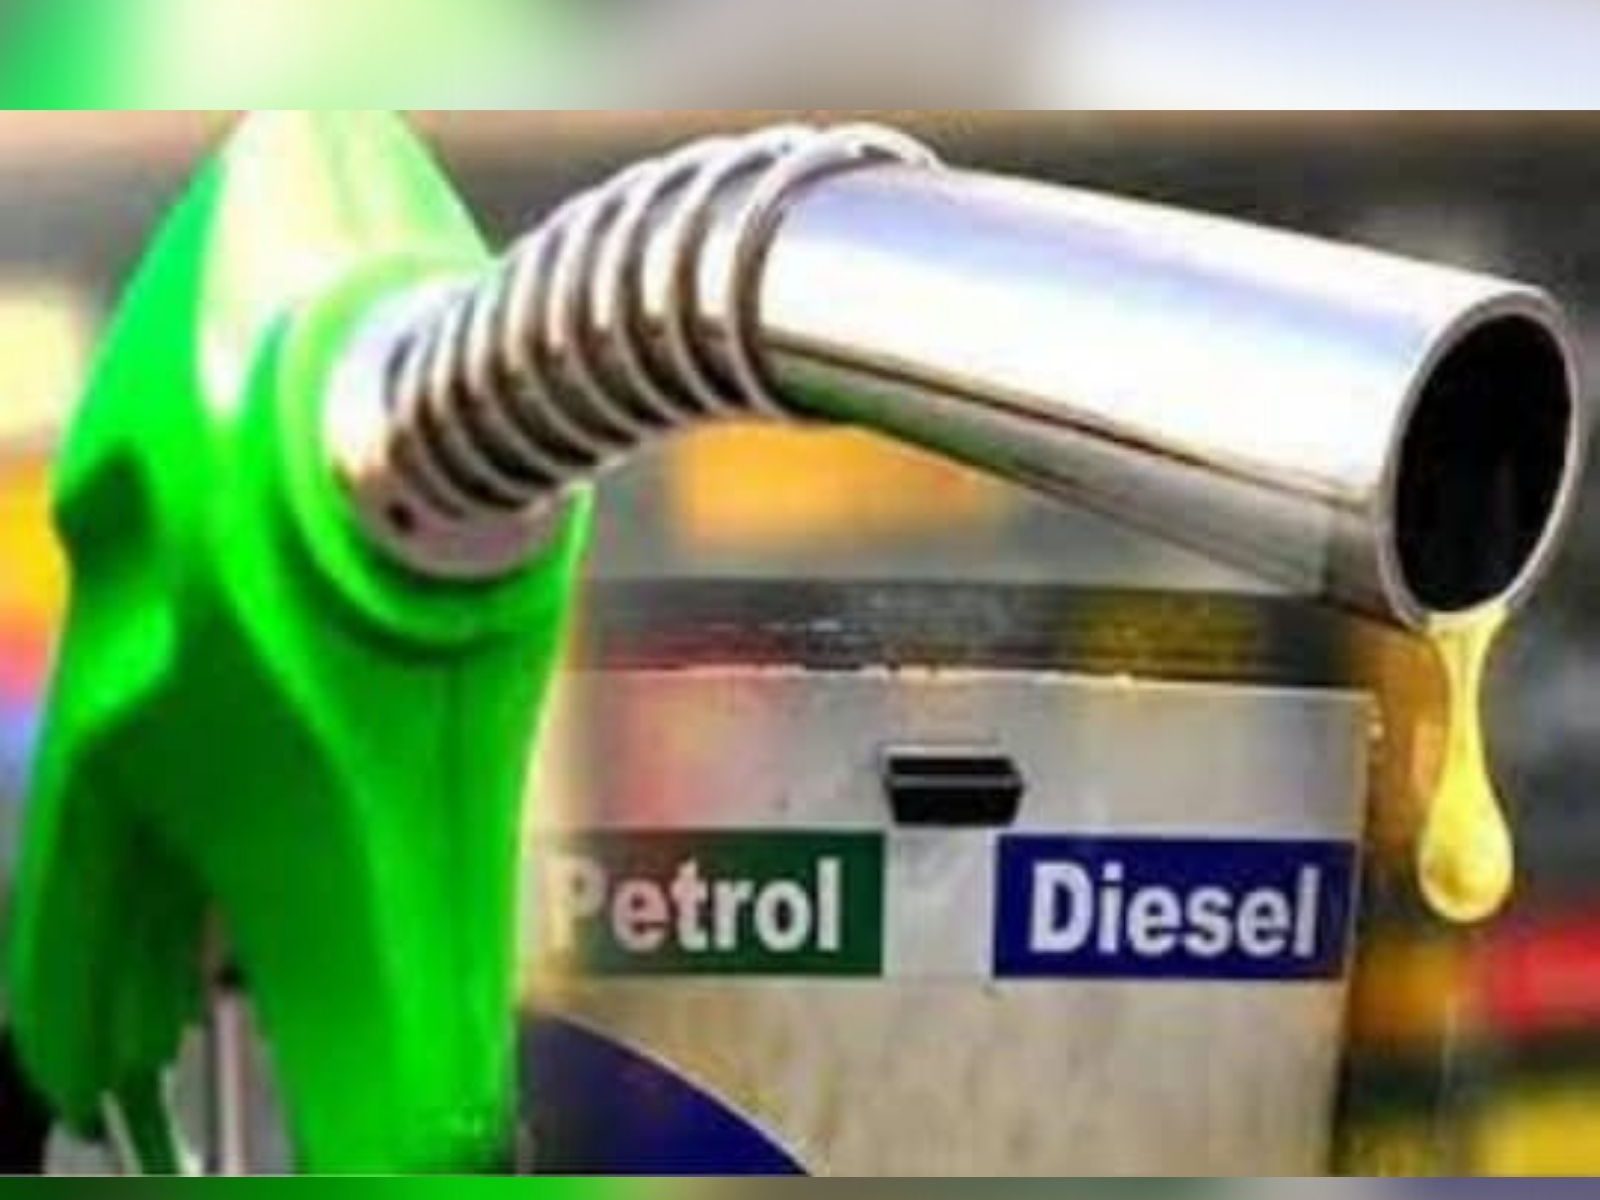  Petrol Diesel Price Today: ਕੰਪਨੀਆਂ 'ਤੇ ਪੈਟਰੋਲ-ਡੀਜ਼ਲ ਦੀਆਂ ਕੀਮਤਾਂ ਵਧਾਉਣ ਦਾ ਦਬਾਅ, ਜਾਣੋ ਇਸਦਾ ਕਾਰਨ
